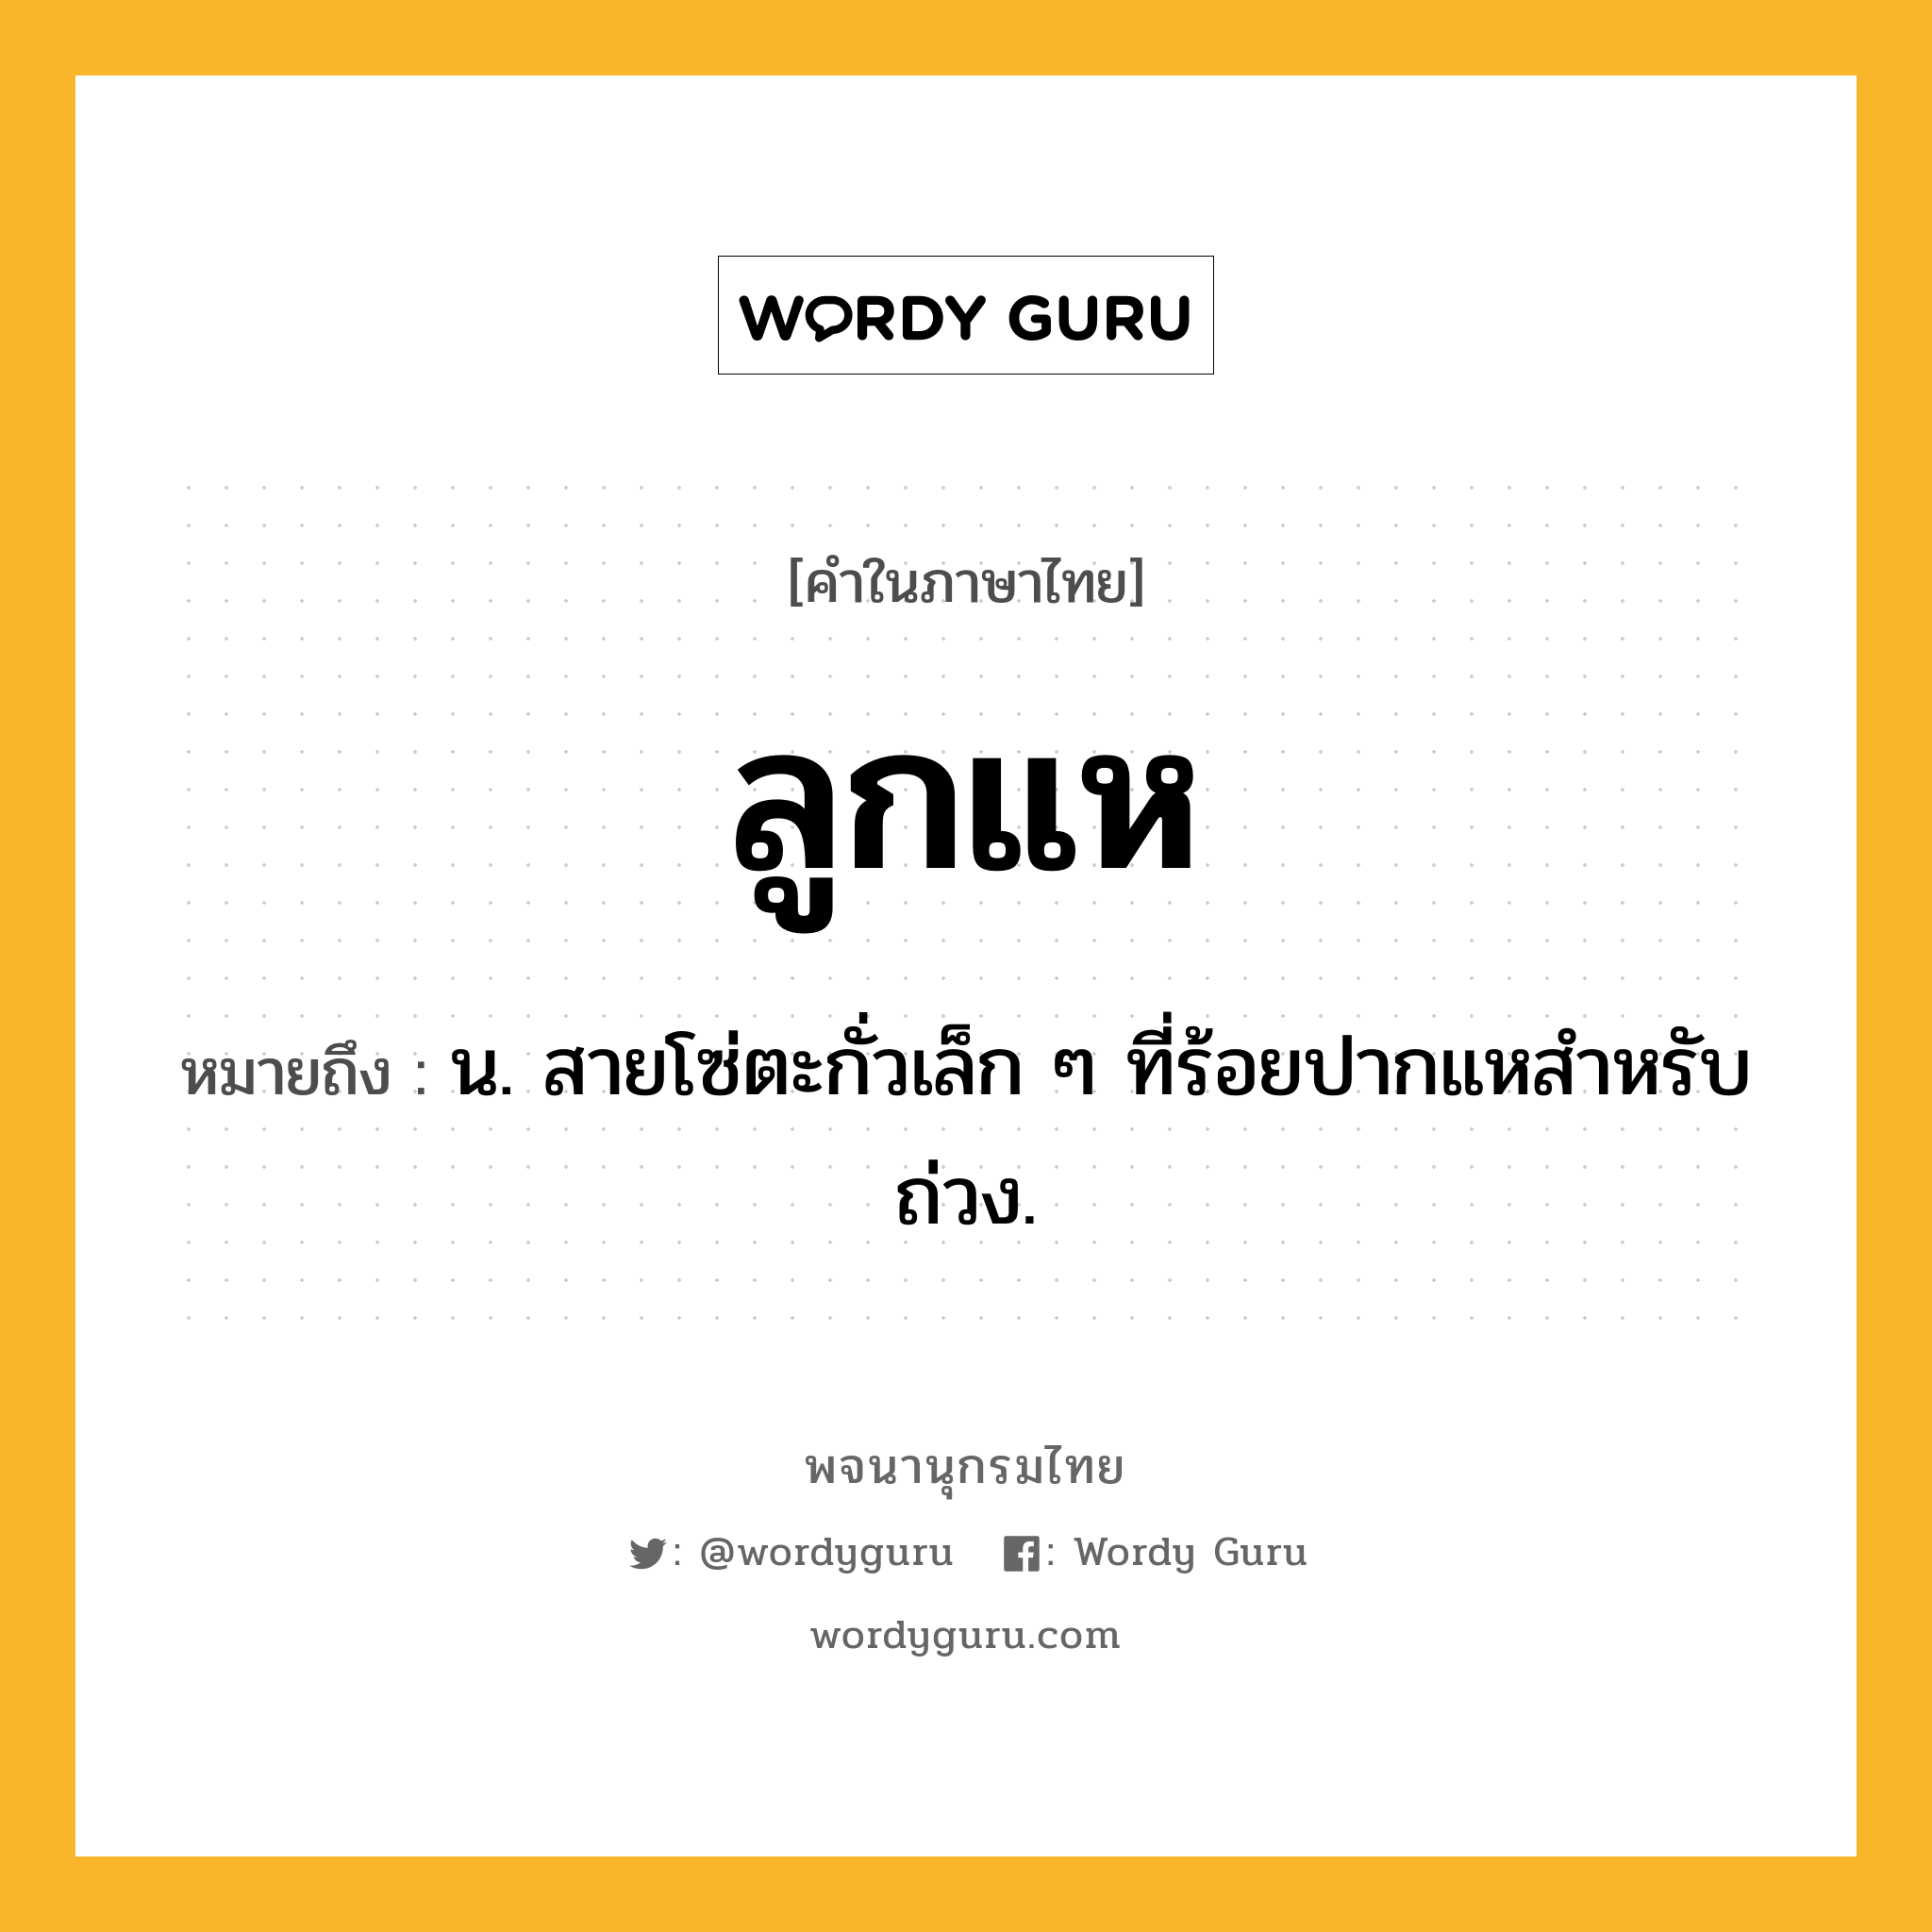 ลูกแห หมายถึงอะไร?, คำในภาษาไทย ลูกแห หมายถึง น. สายโซ่ตะกั่วเล็ก ๆ ที่ร้อยปากแหสําหรับถ่วง.